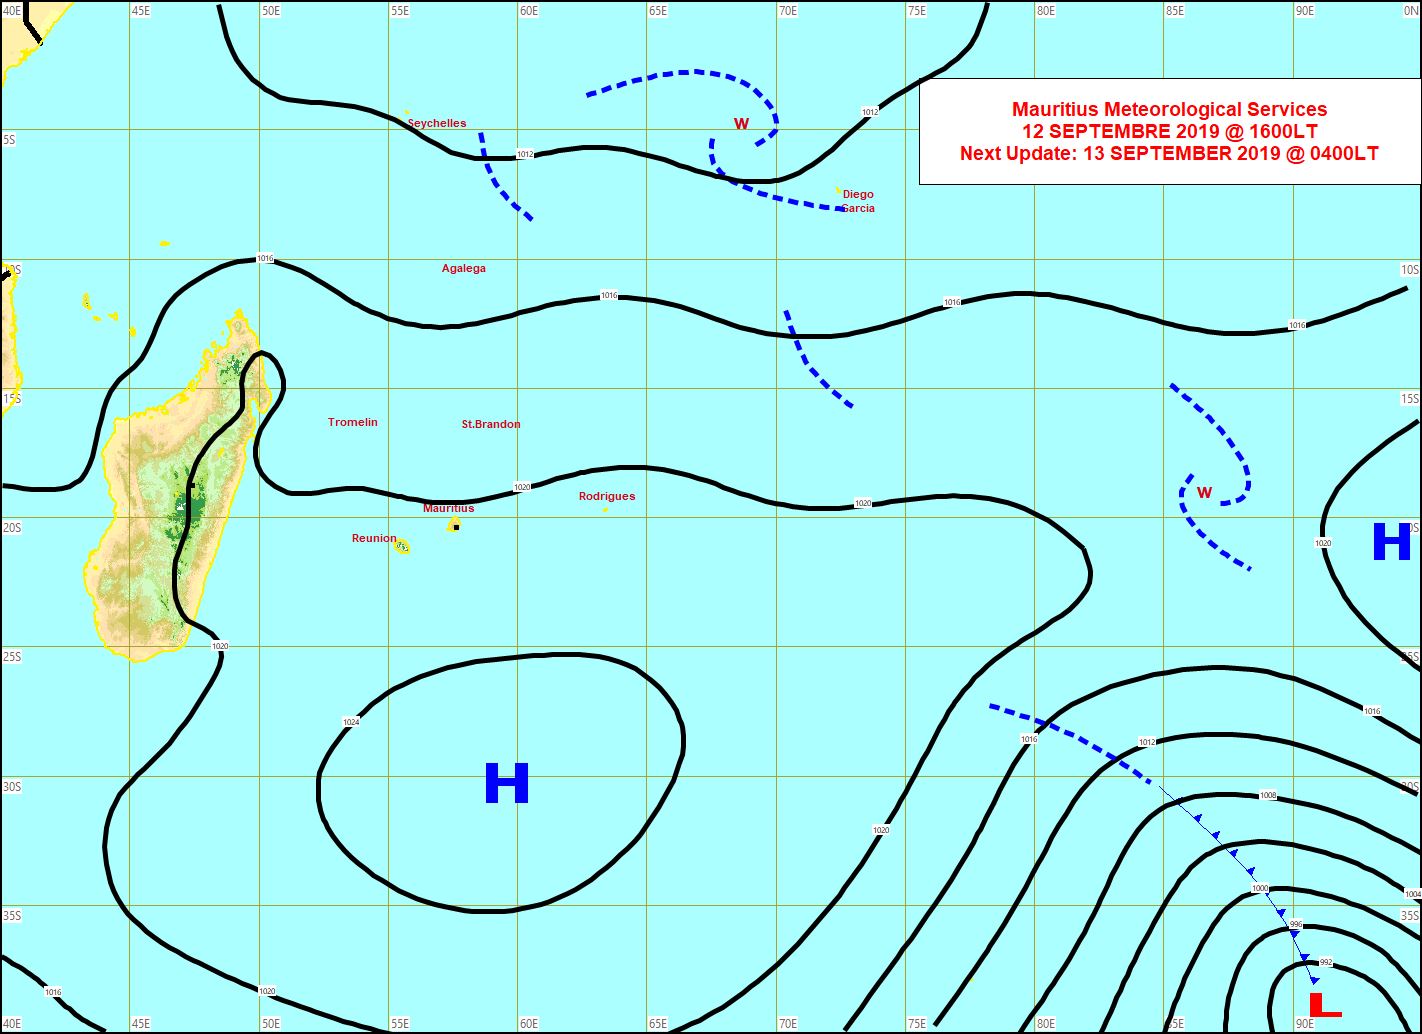 L'anticyclone(H) de 1027hpa commencera à se décaler vers l'Est à partir de samedi. MMS